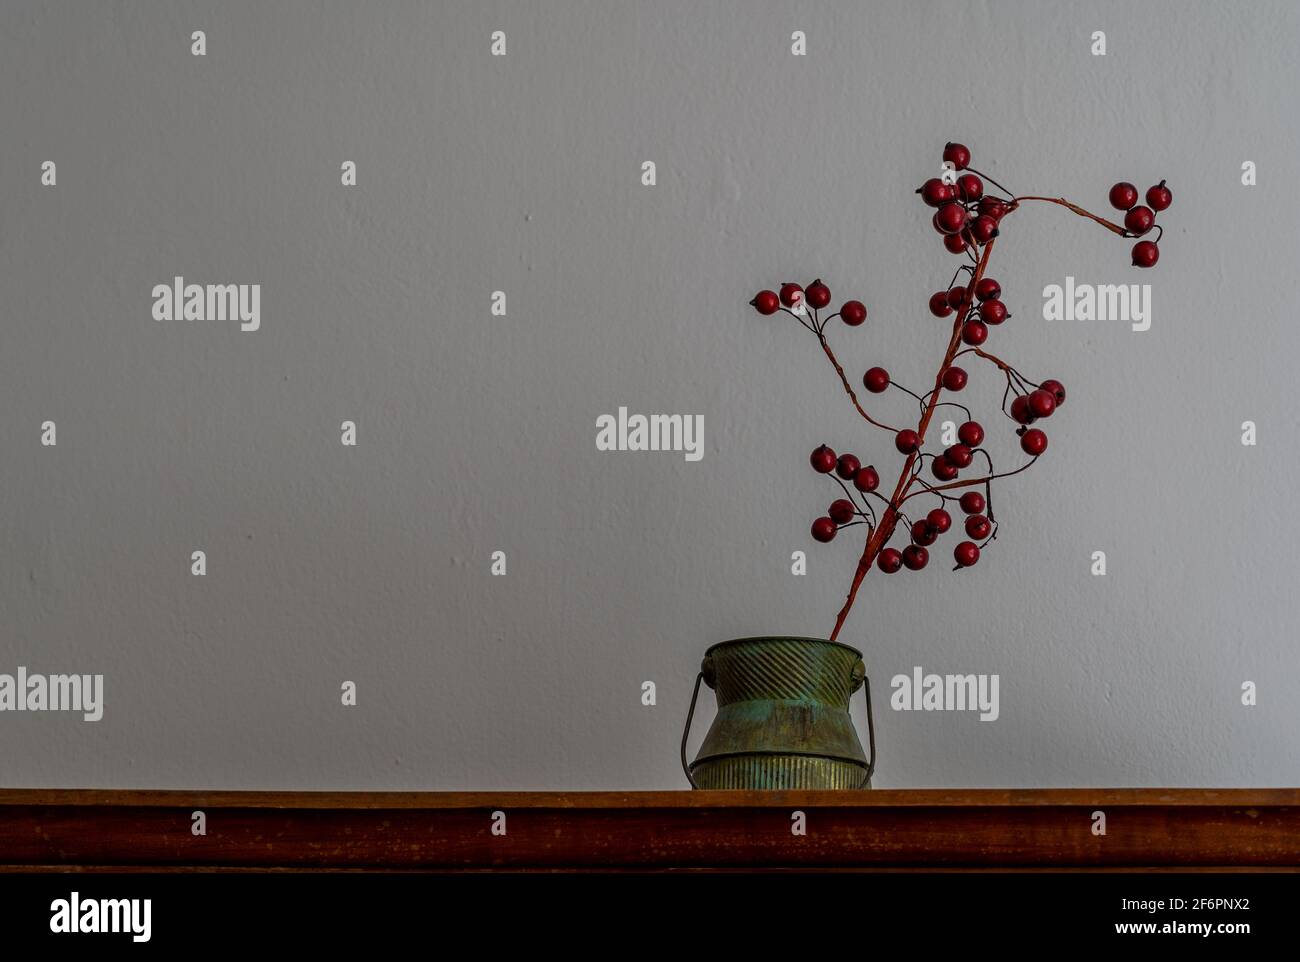 Décoration maison - plante avec baies rouges et un vieux tasse Banque D'Images